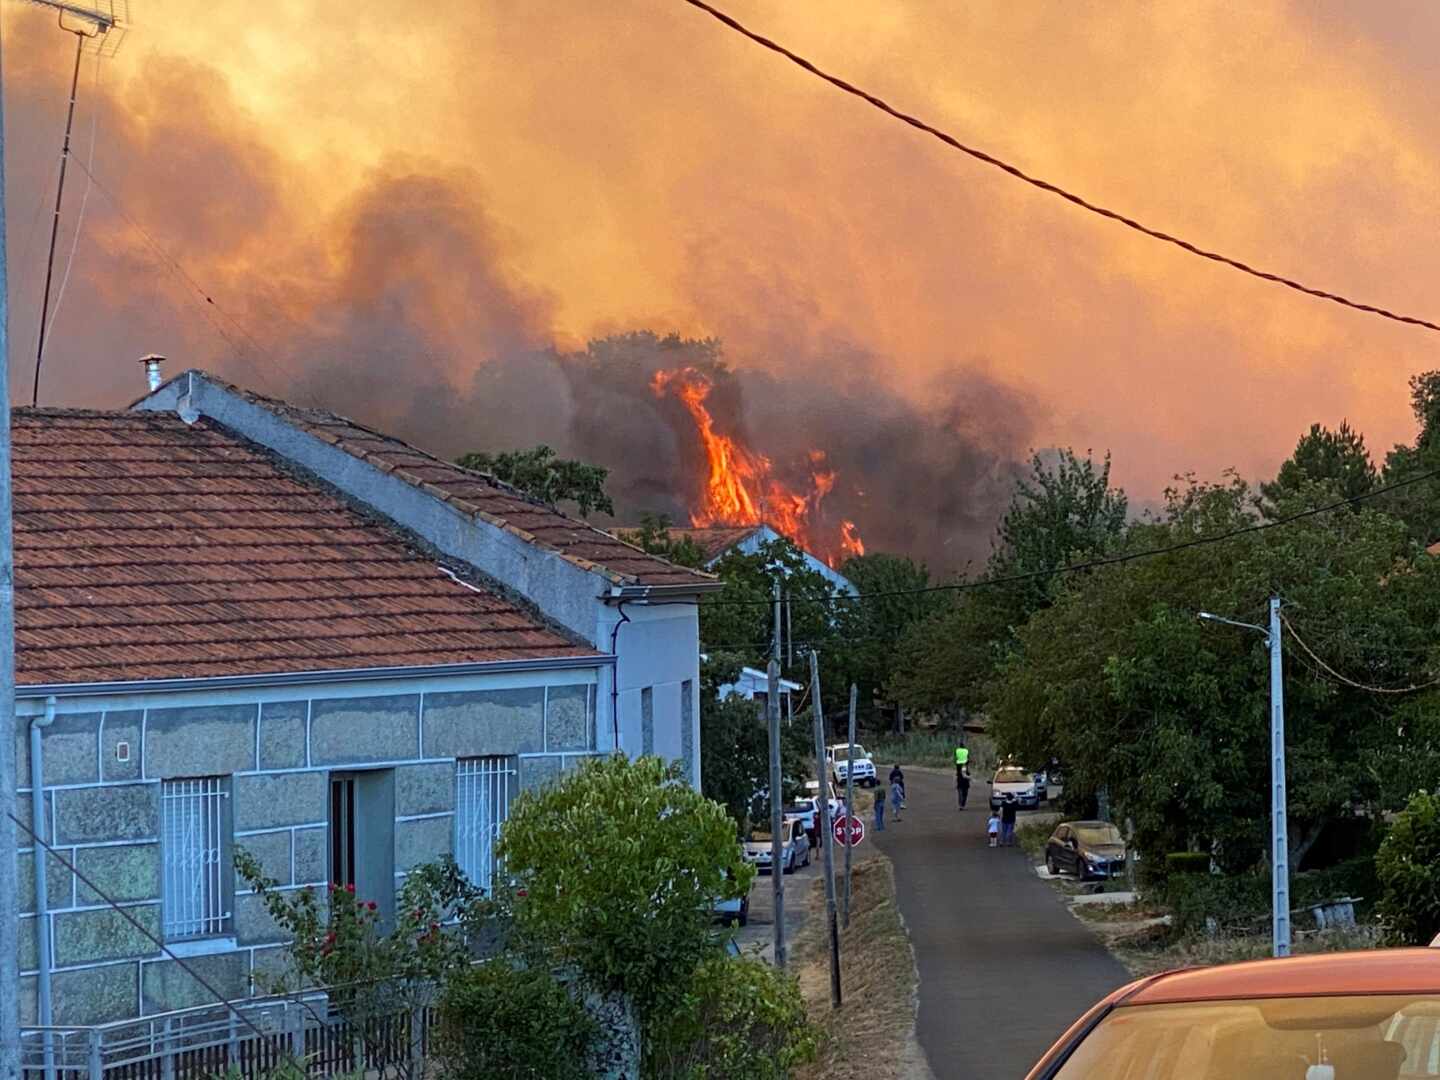 Avanza sin control el incendio en Monterrei (Orense) próximo a núcleos habitados